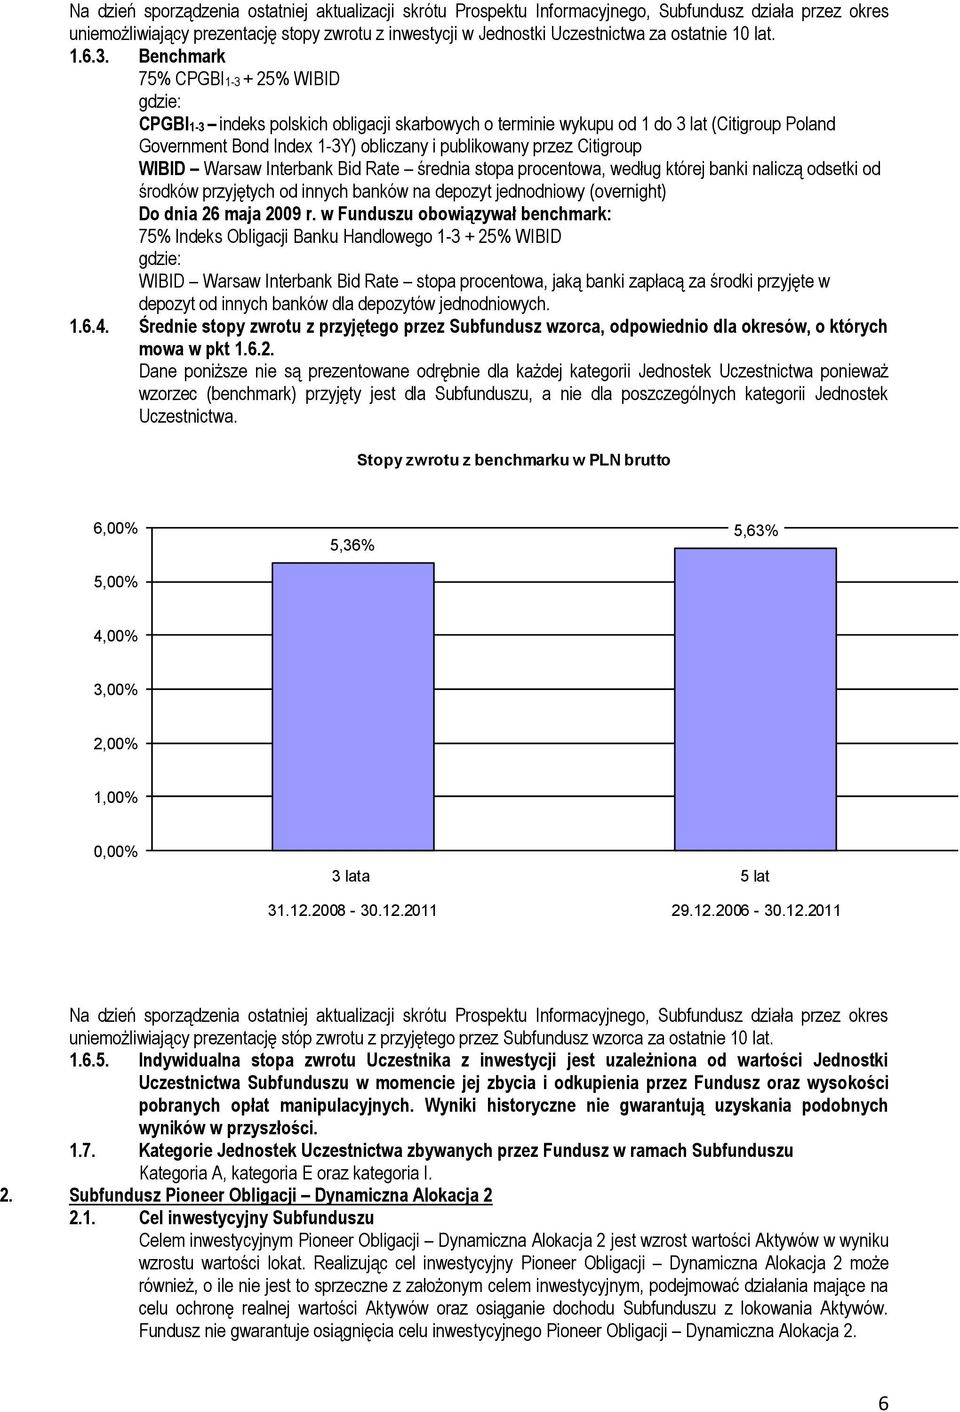 Benchmark 75% CPGBI1-3 + 25% WIBID gdzie: CPGBI1-3 indeks polskich obligacji skarbowych o terminie wykupu od 1 do 3 lat (Citigroup Poland Government Bond Index 1-3Y) obliczany i publikowany przez